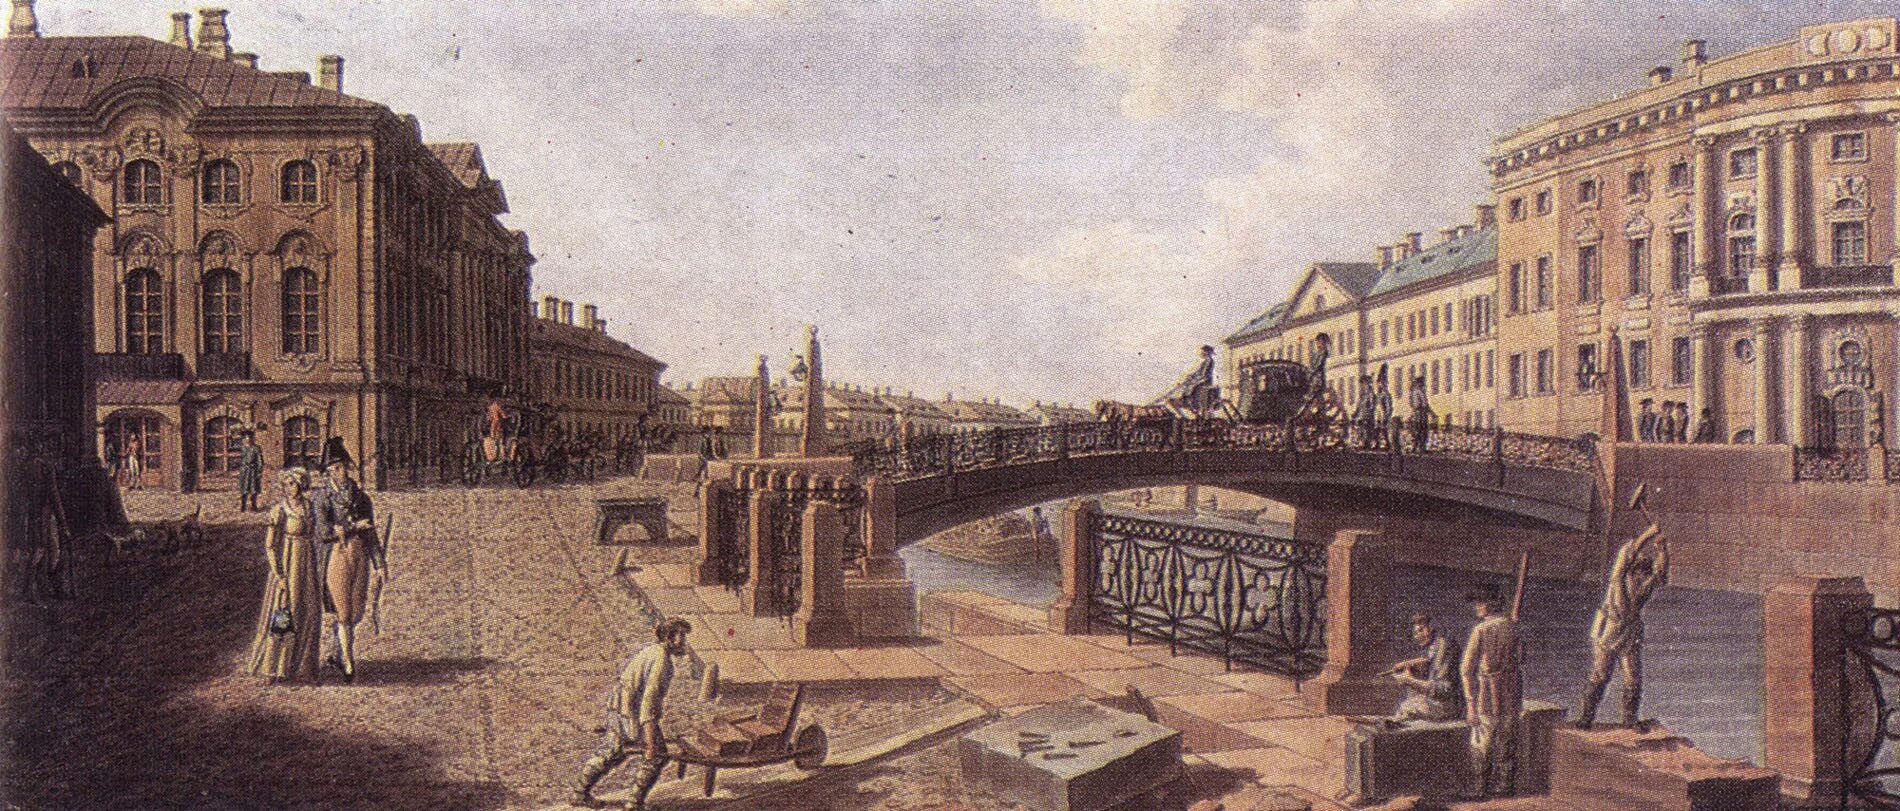 Екатерининский канал Санкт-Петербург 19 век. Набережные 18 века